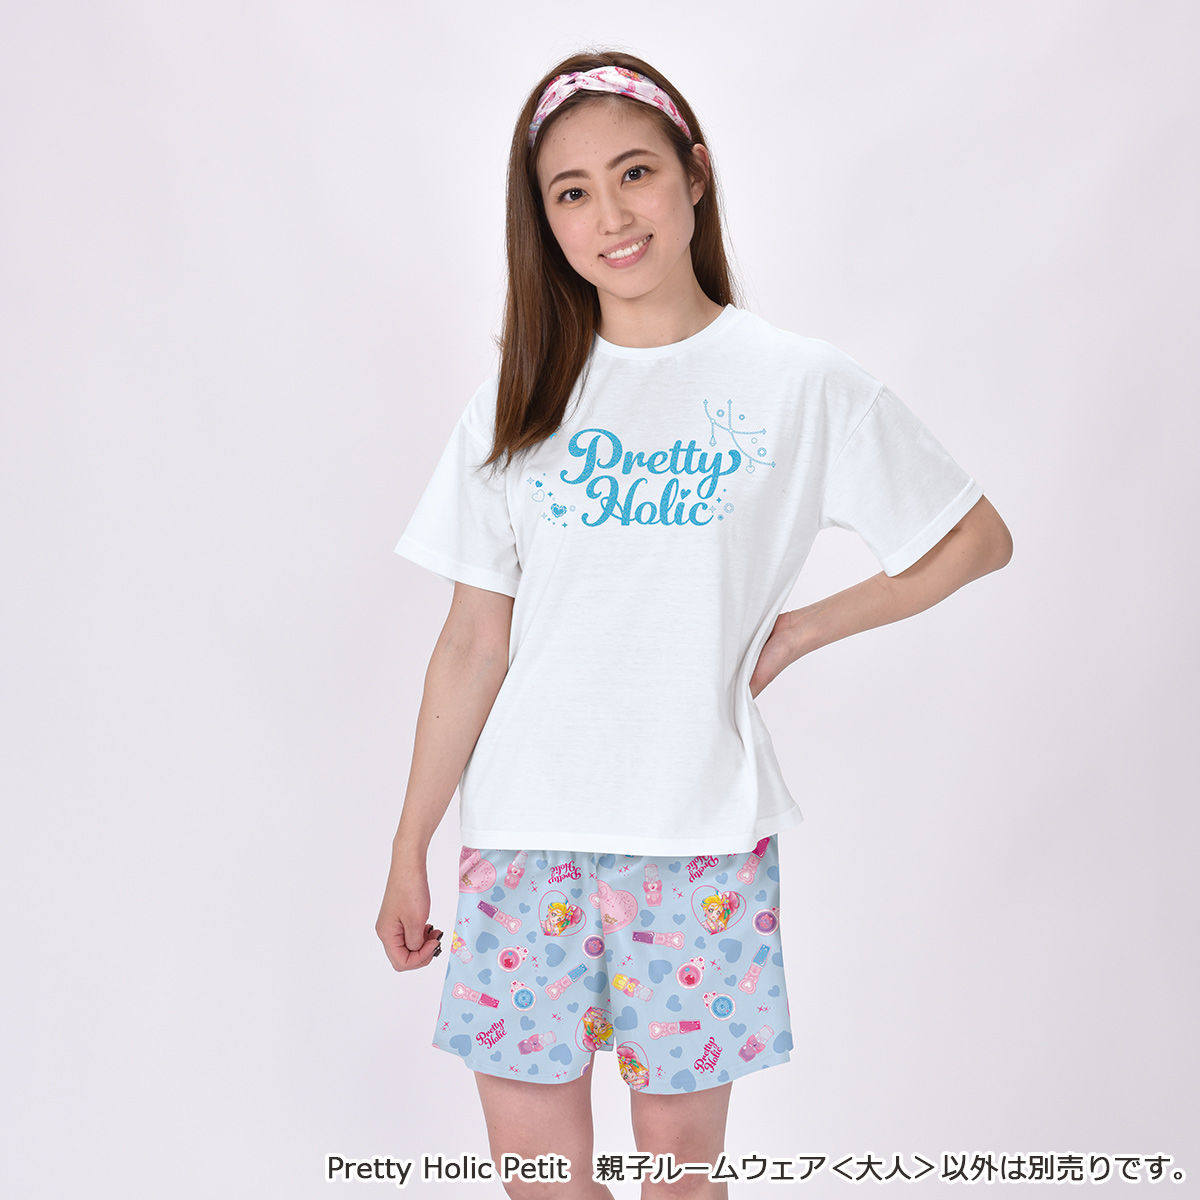 Pretty Holic Petit 親子ルームウェア 大人 トロピカル ジュ プリキュア ファッション アクセサリー バンダイナムコグループ公式通販サイト